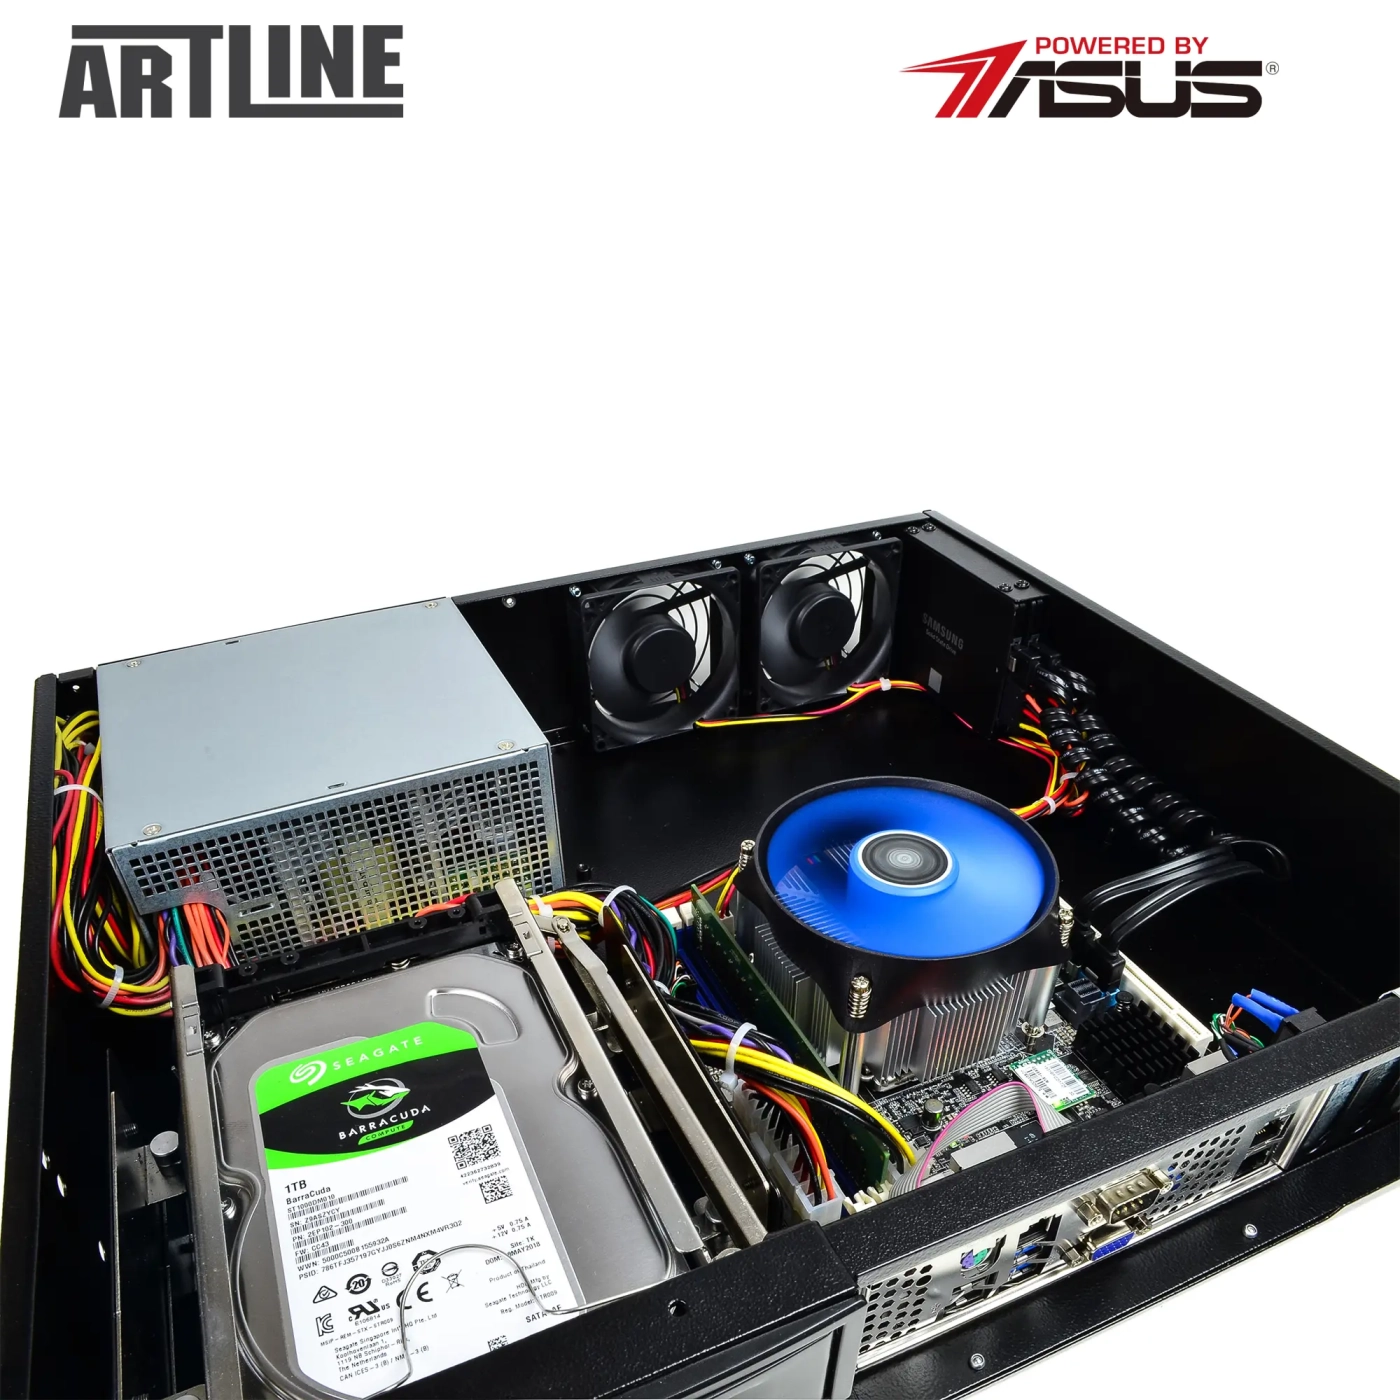 Купить Сервер ARTLINE Business R37 (R37v90) - фото 10